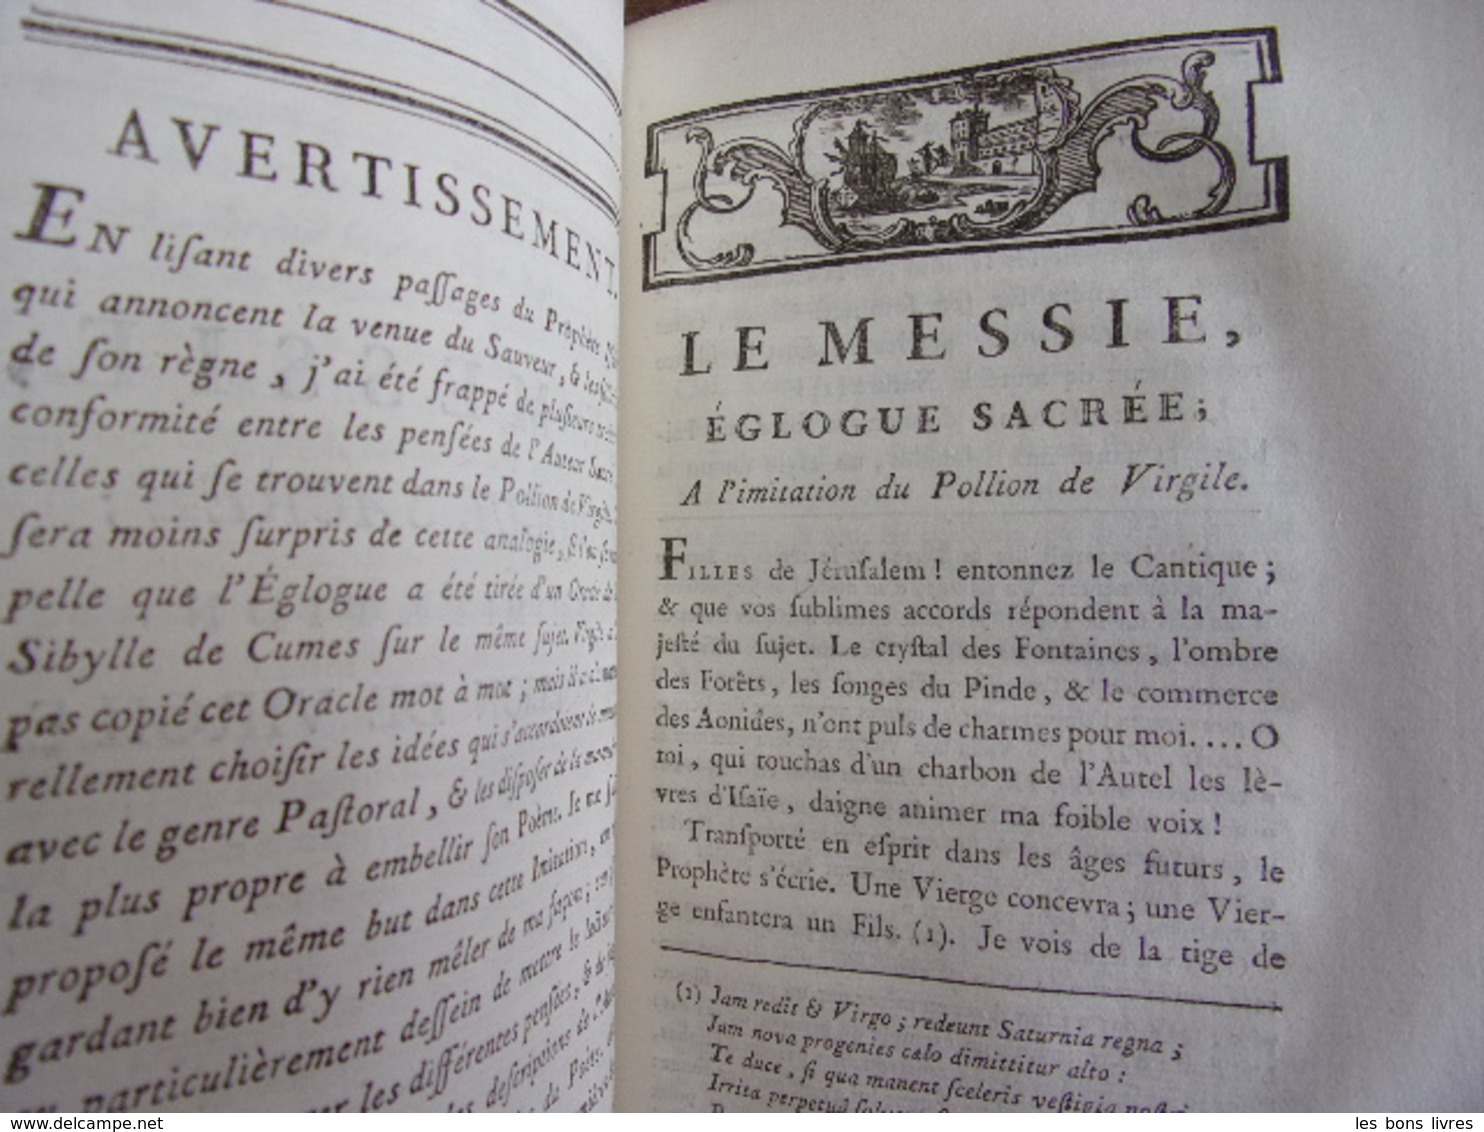 ŒUVRES D'ALEXANDRE POPE 2 Vols Orné De Belles Gravures MDCCLXXIX - Jusque 1700